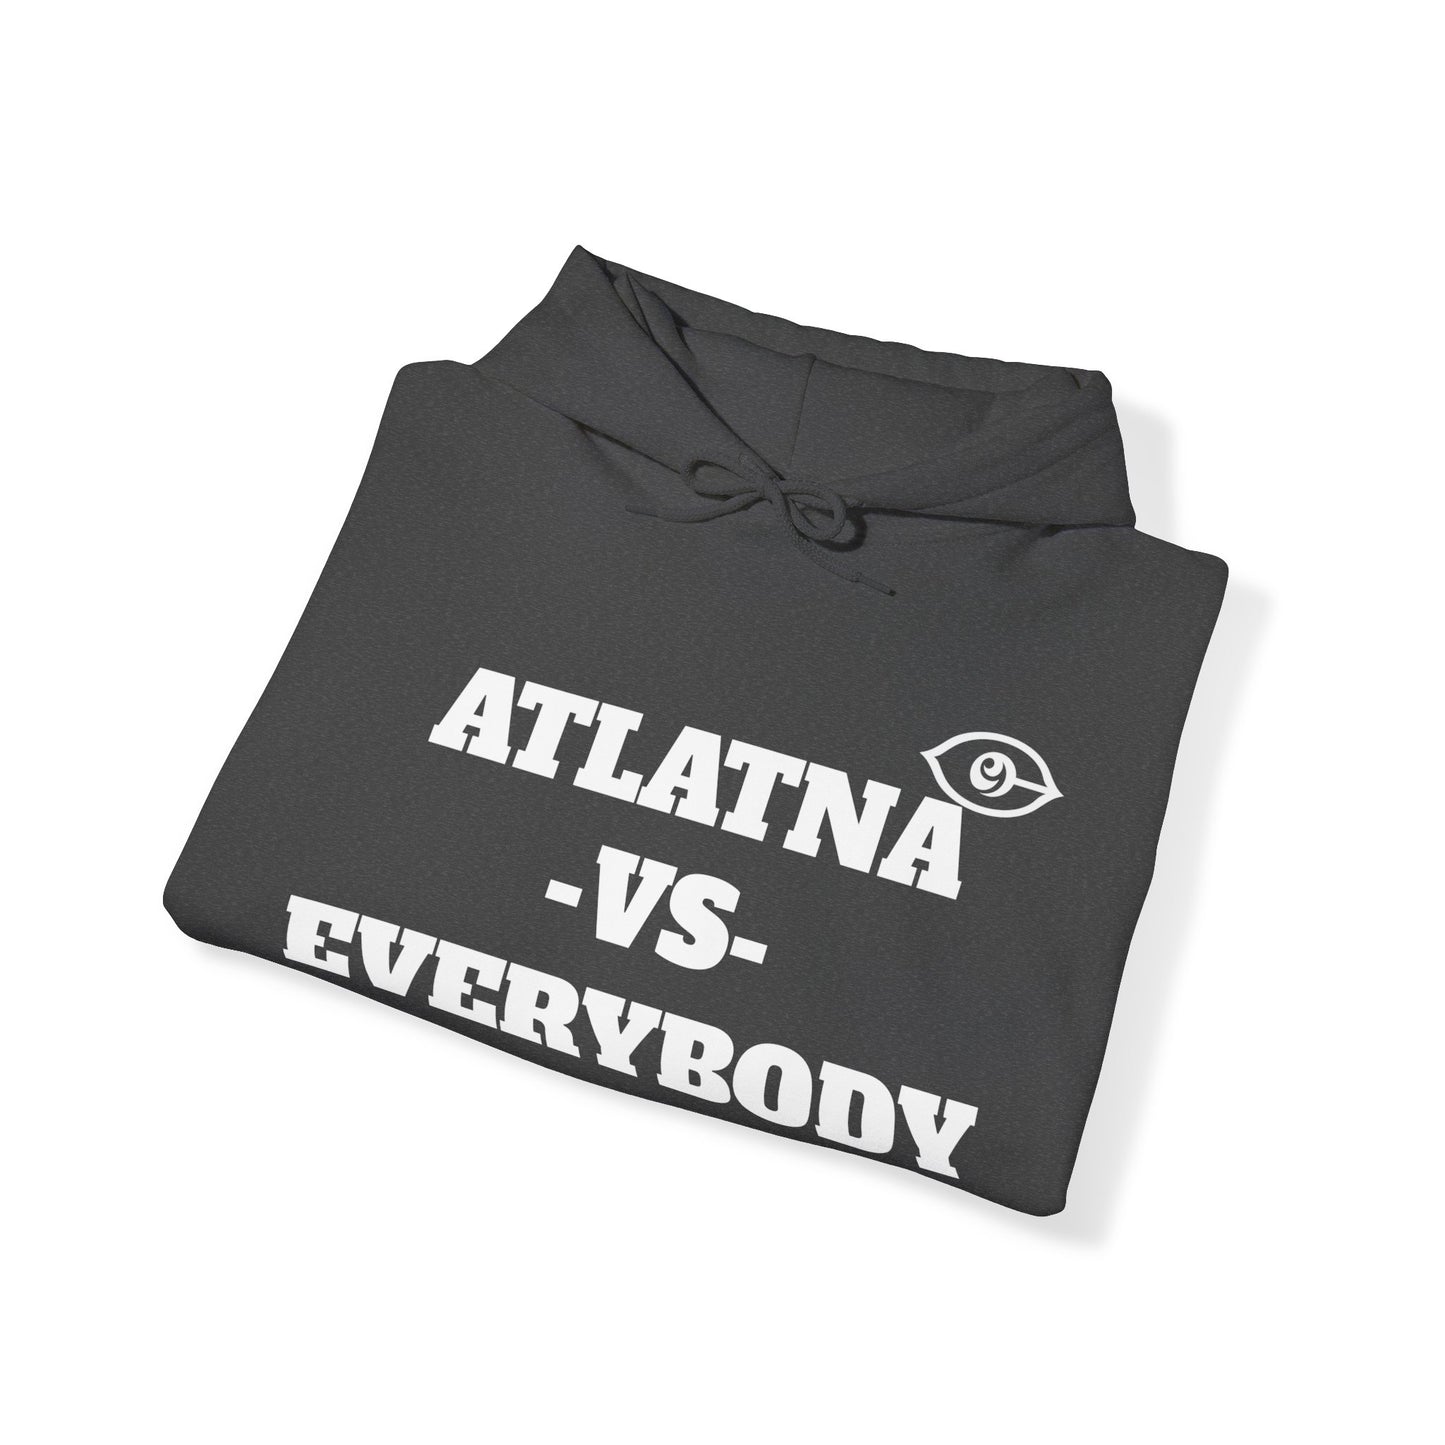 ATLANTA VS Everybody Unisex Heavy Blend™ Hoodie Sweatshirt